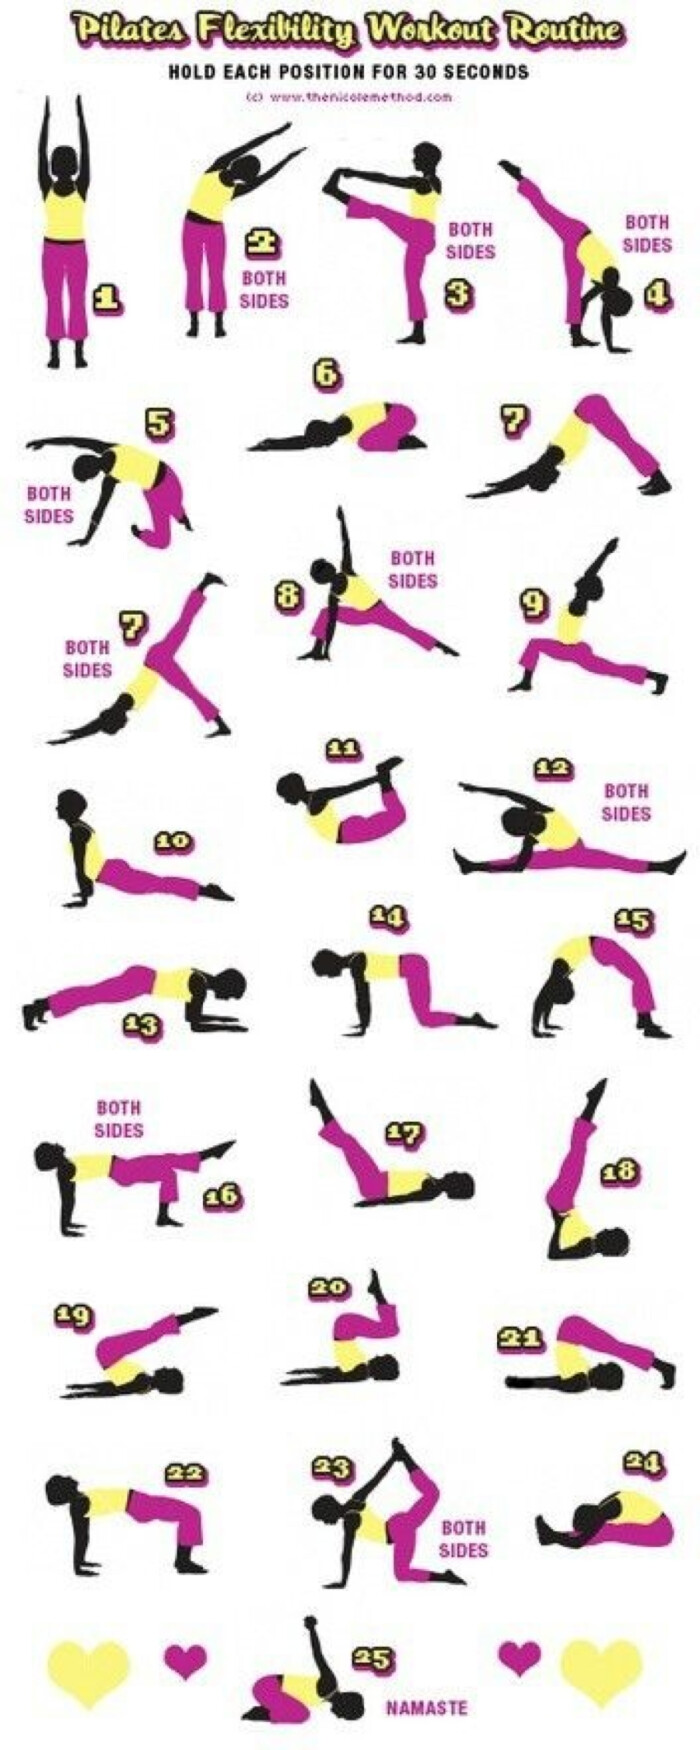 锻炼整个身体柔韧性的25个动作